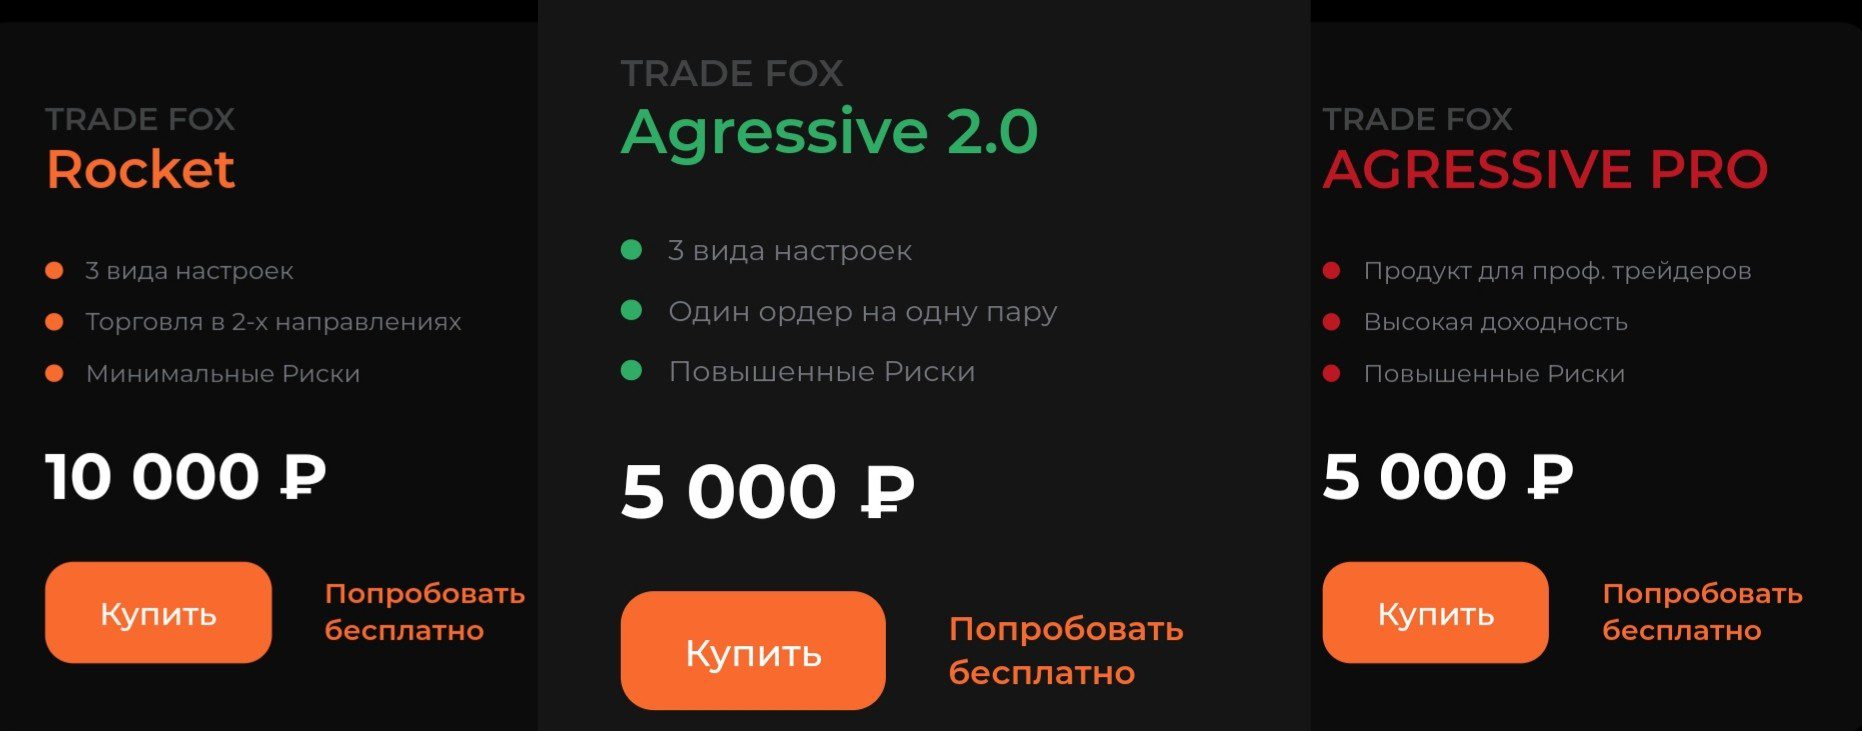 tradefox обзор проекта